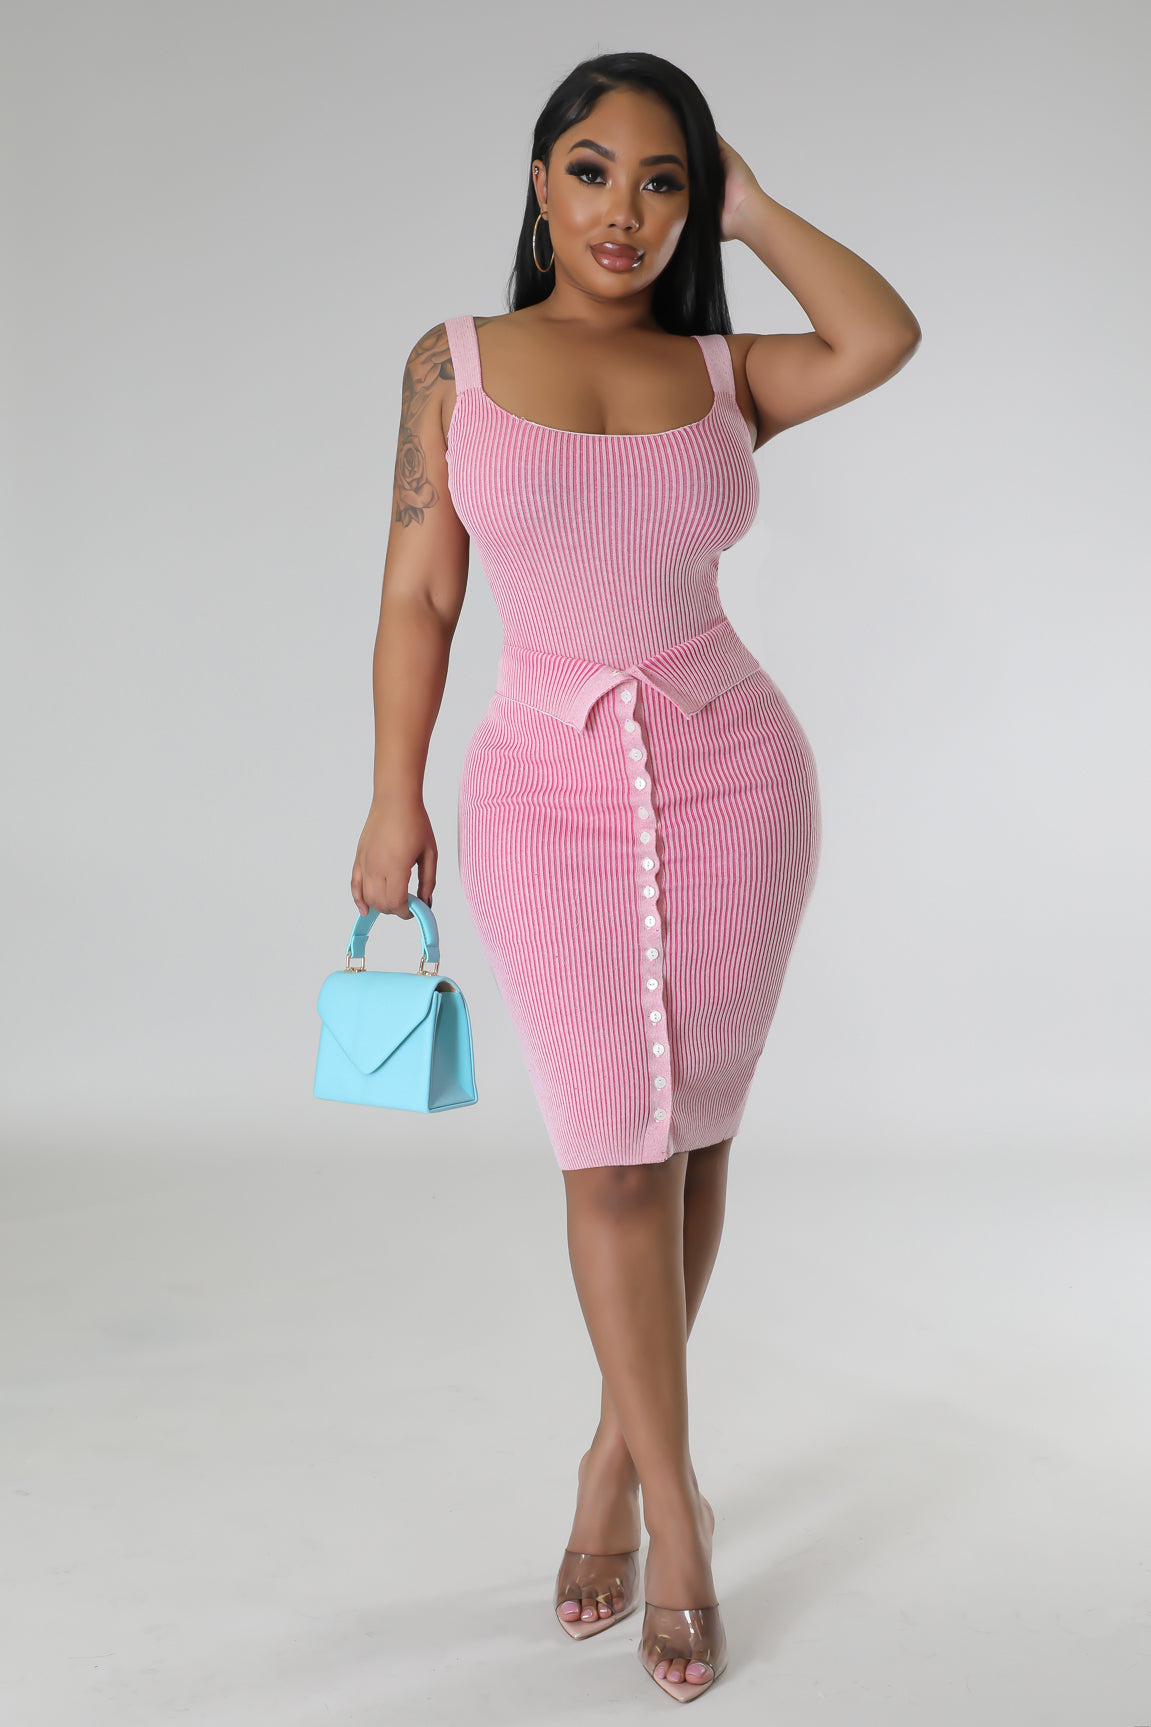 Kathy Gal Bodysuit Skirt Set Pink